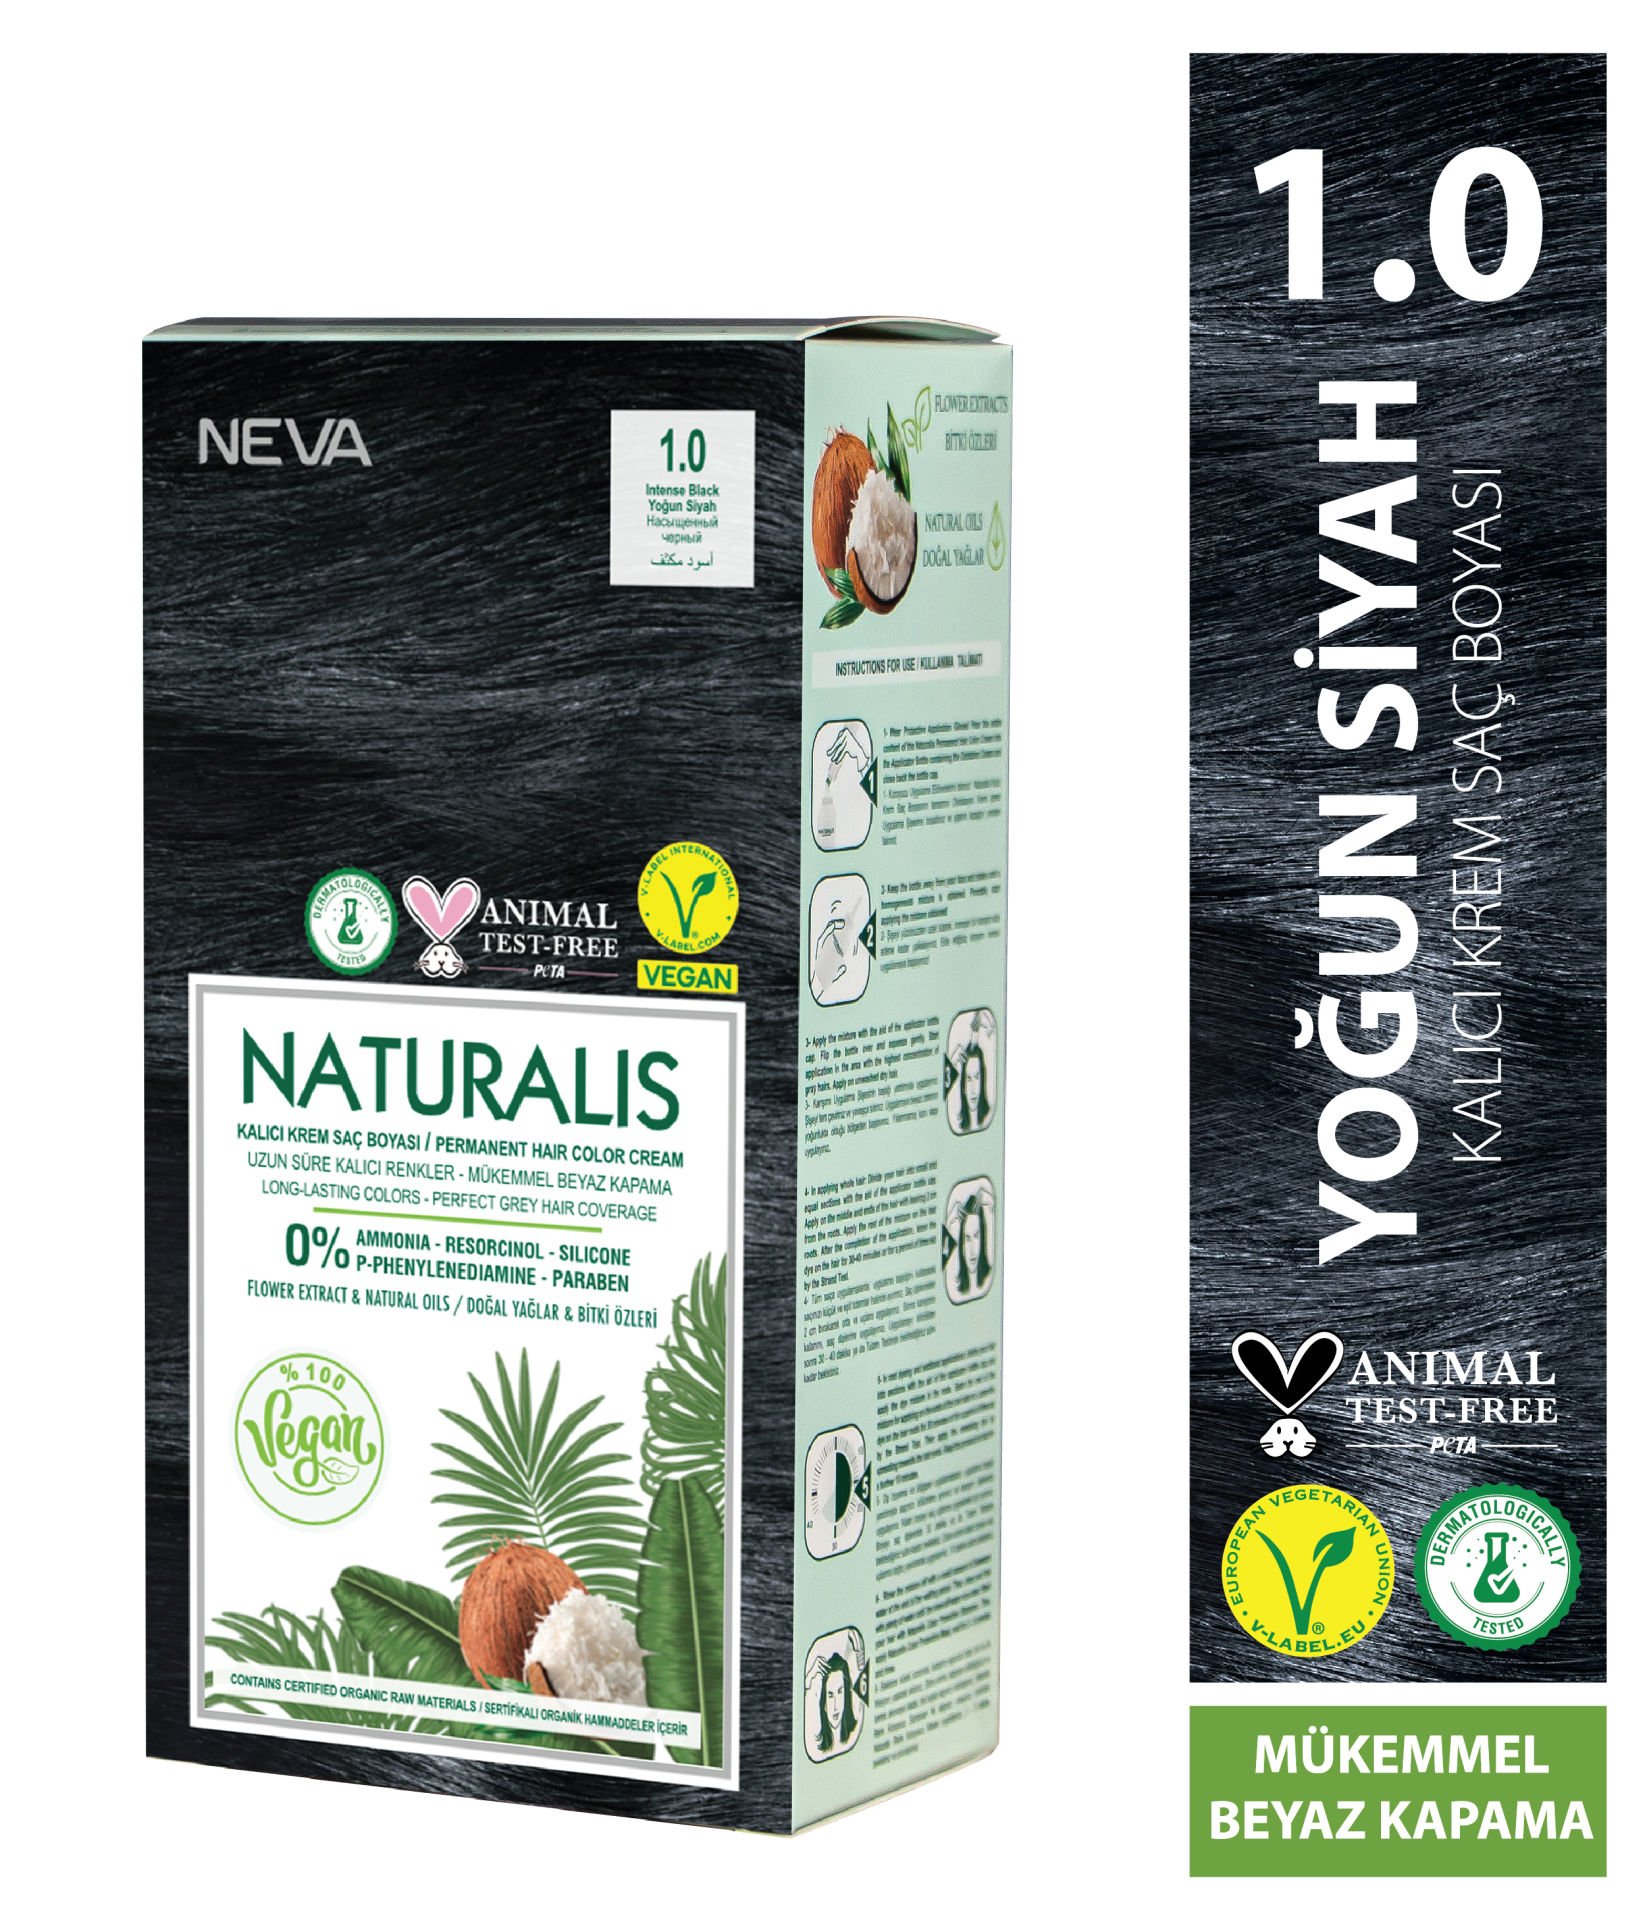 Nevacolor Naturalis Vegan Yoğun Siyah 1.0 Kalıcı Krem Saç Boyası Seti